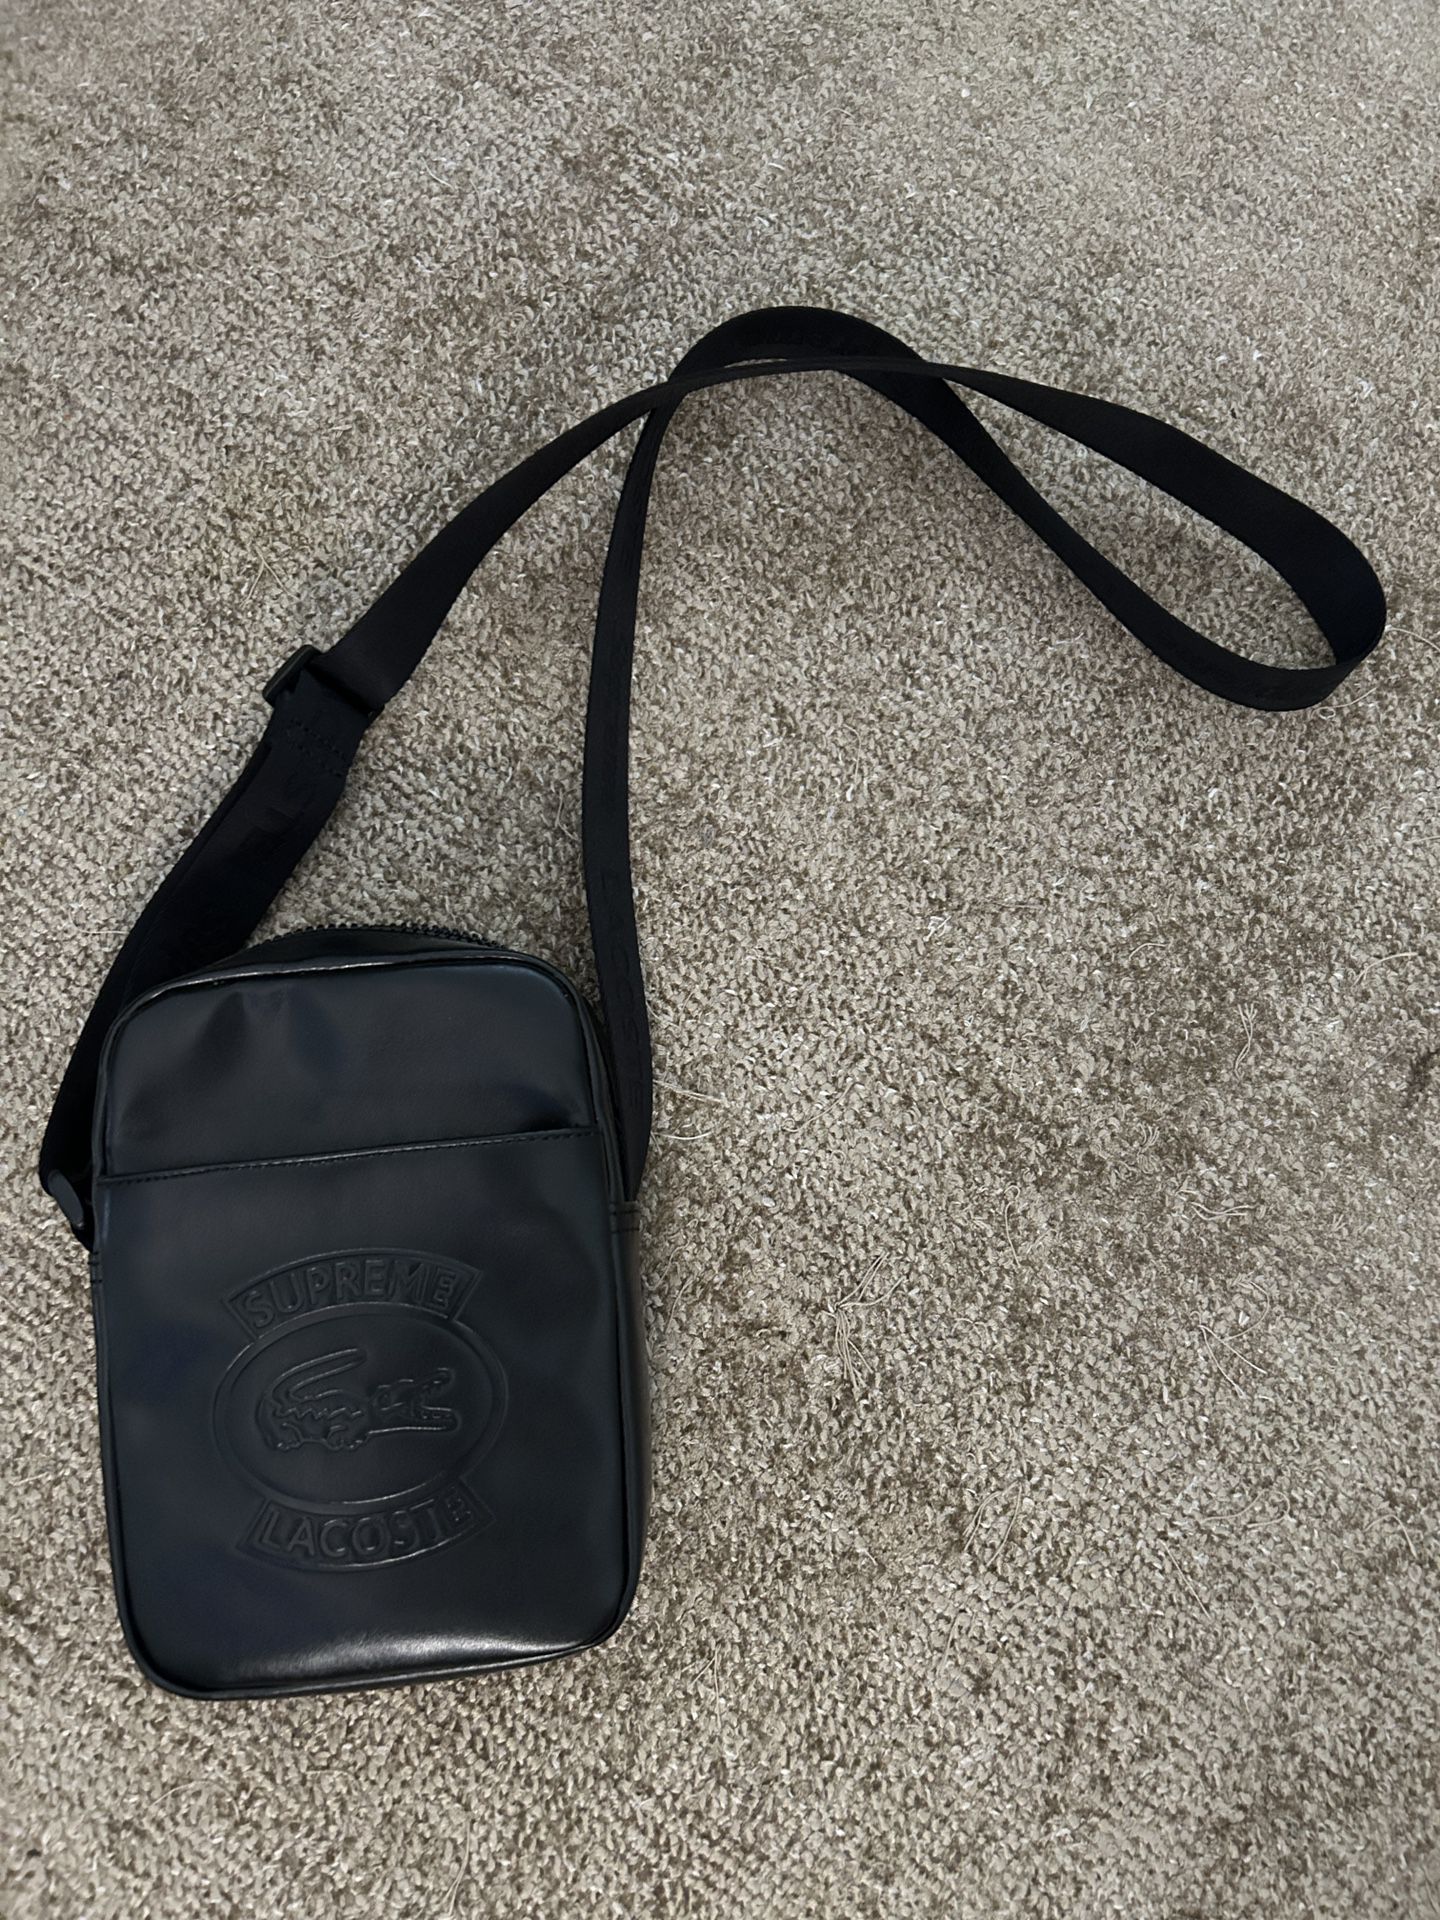 Supreme Shoulder Bag for Sale in CA - OfferUp